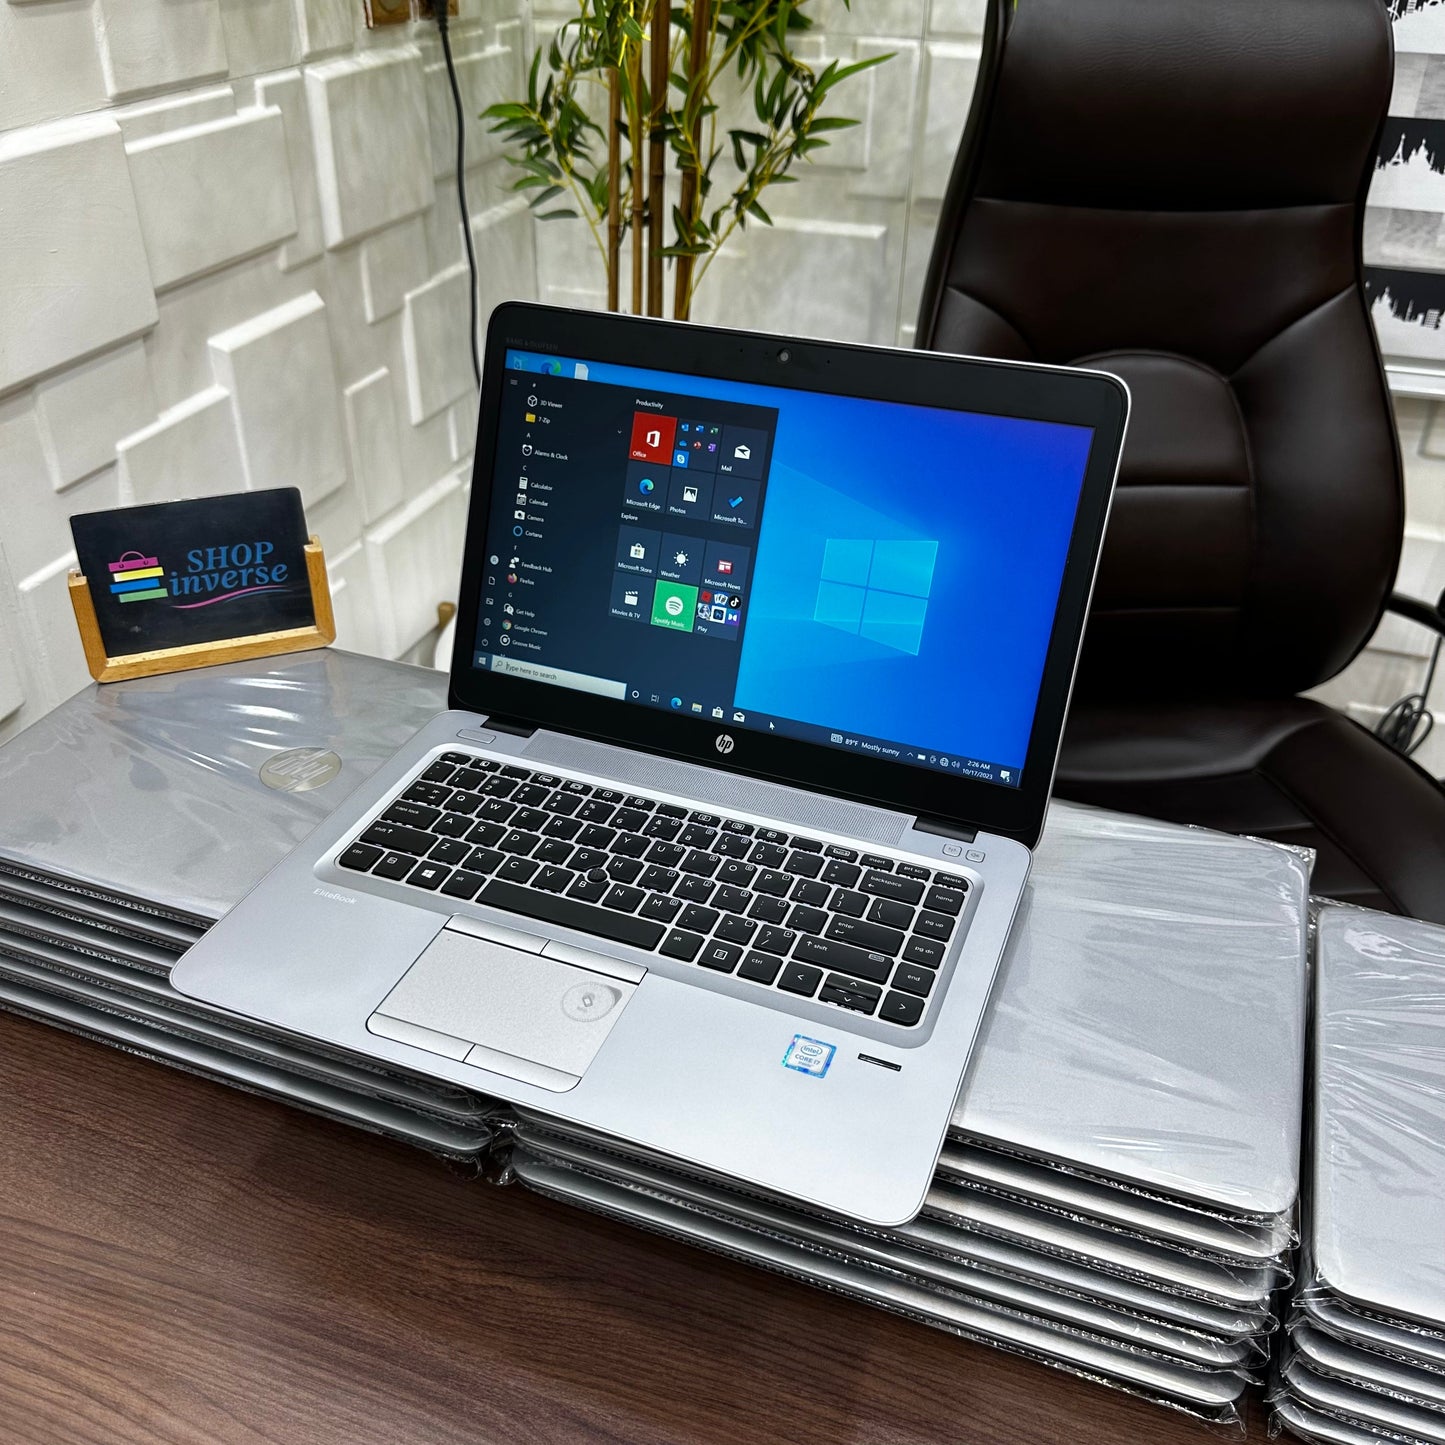 HP EliteBook 840 G3 - 6th Gen. Intel Core i5 - 256GB SSD - 8GB RAM - 4GB Total Graphics - Keyboard Light